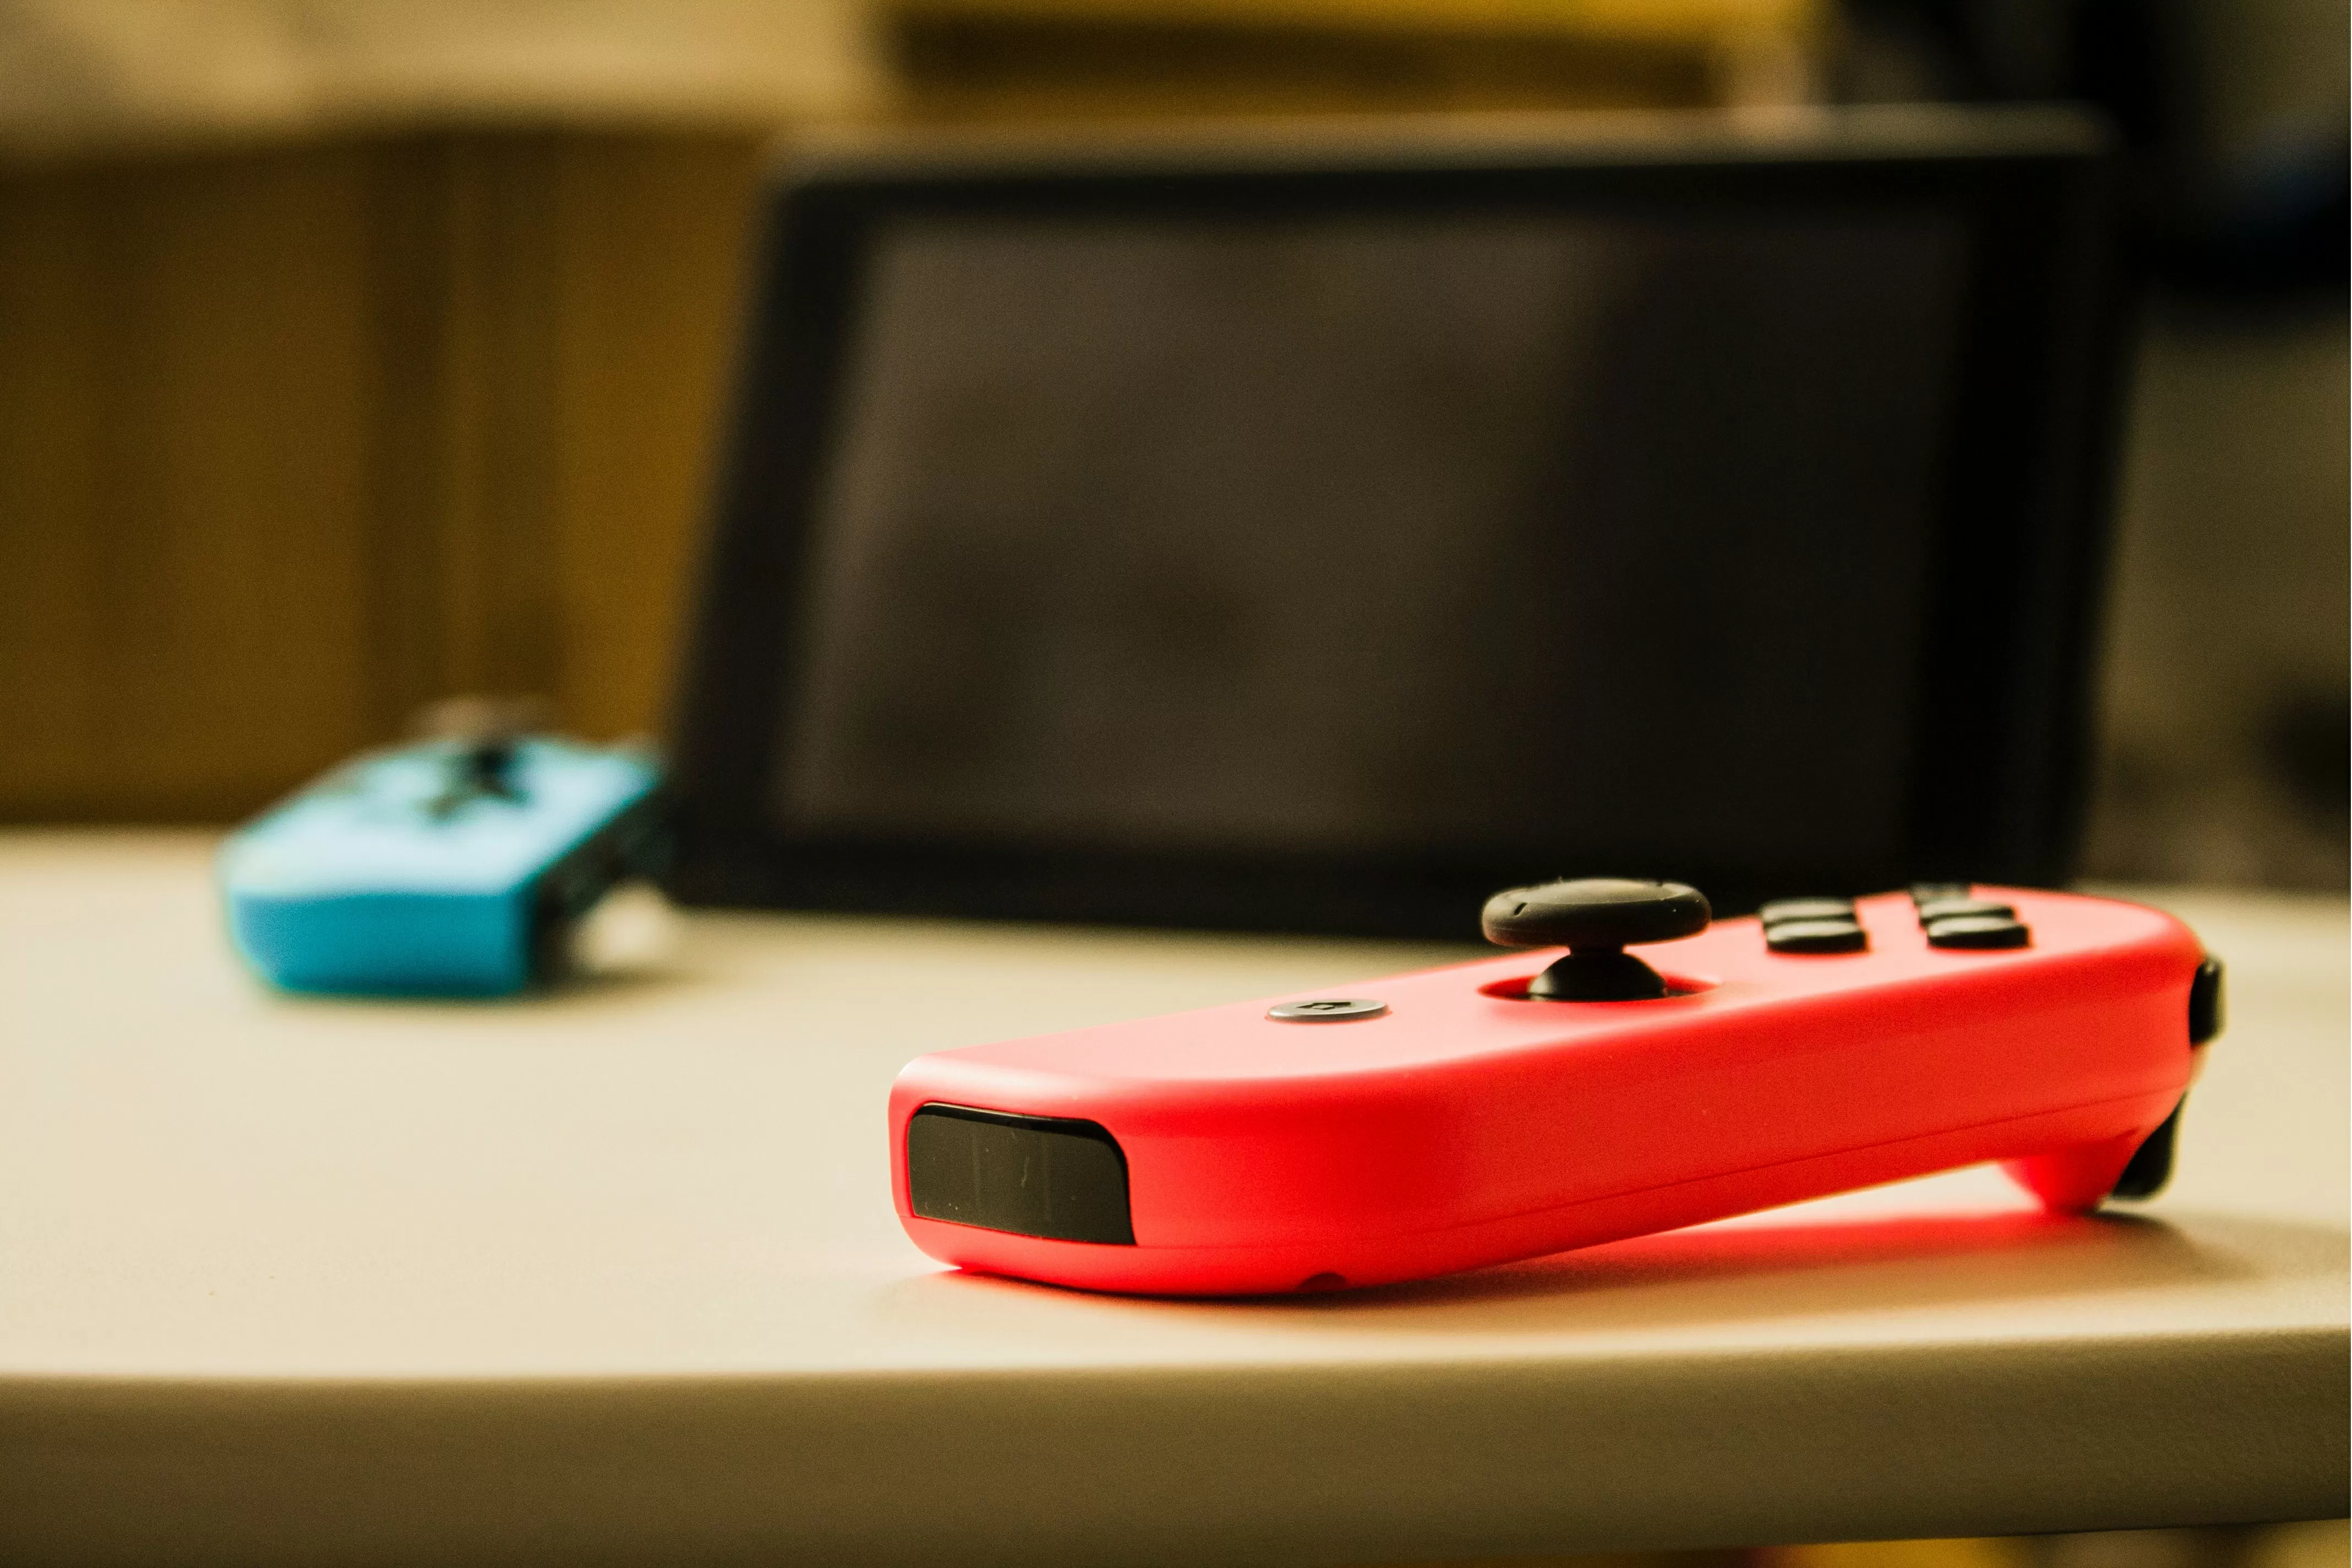 Nintendo riparerà gratuitamente i Joy-Con difettosi in Europa